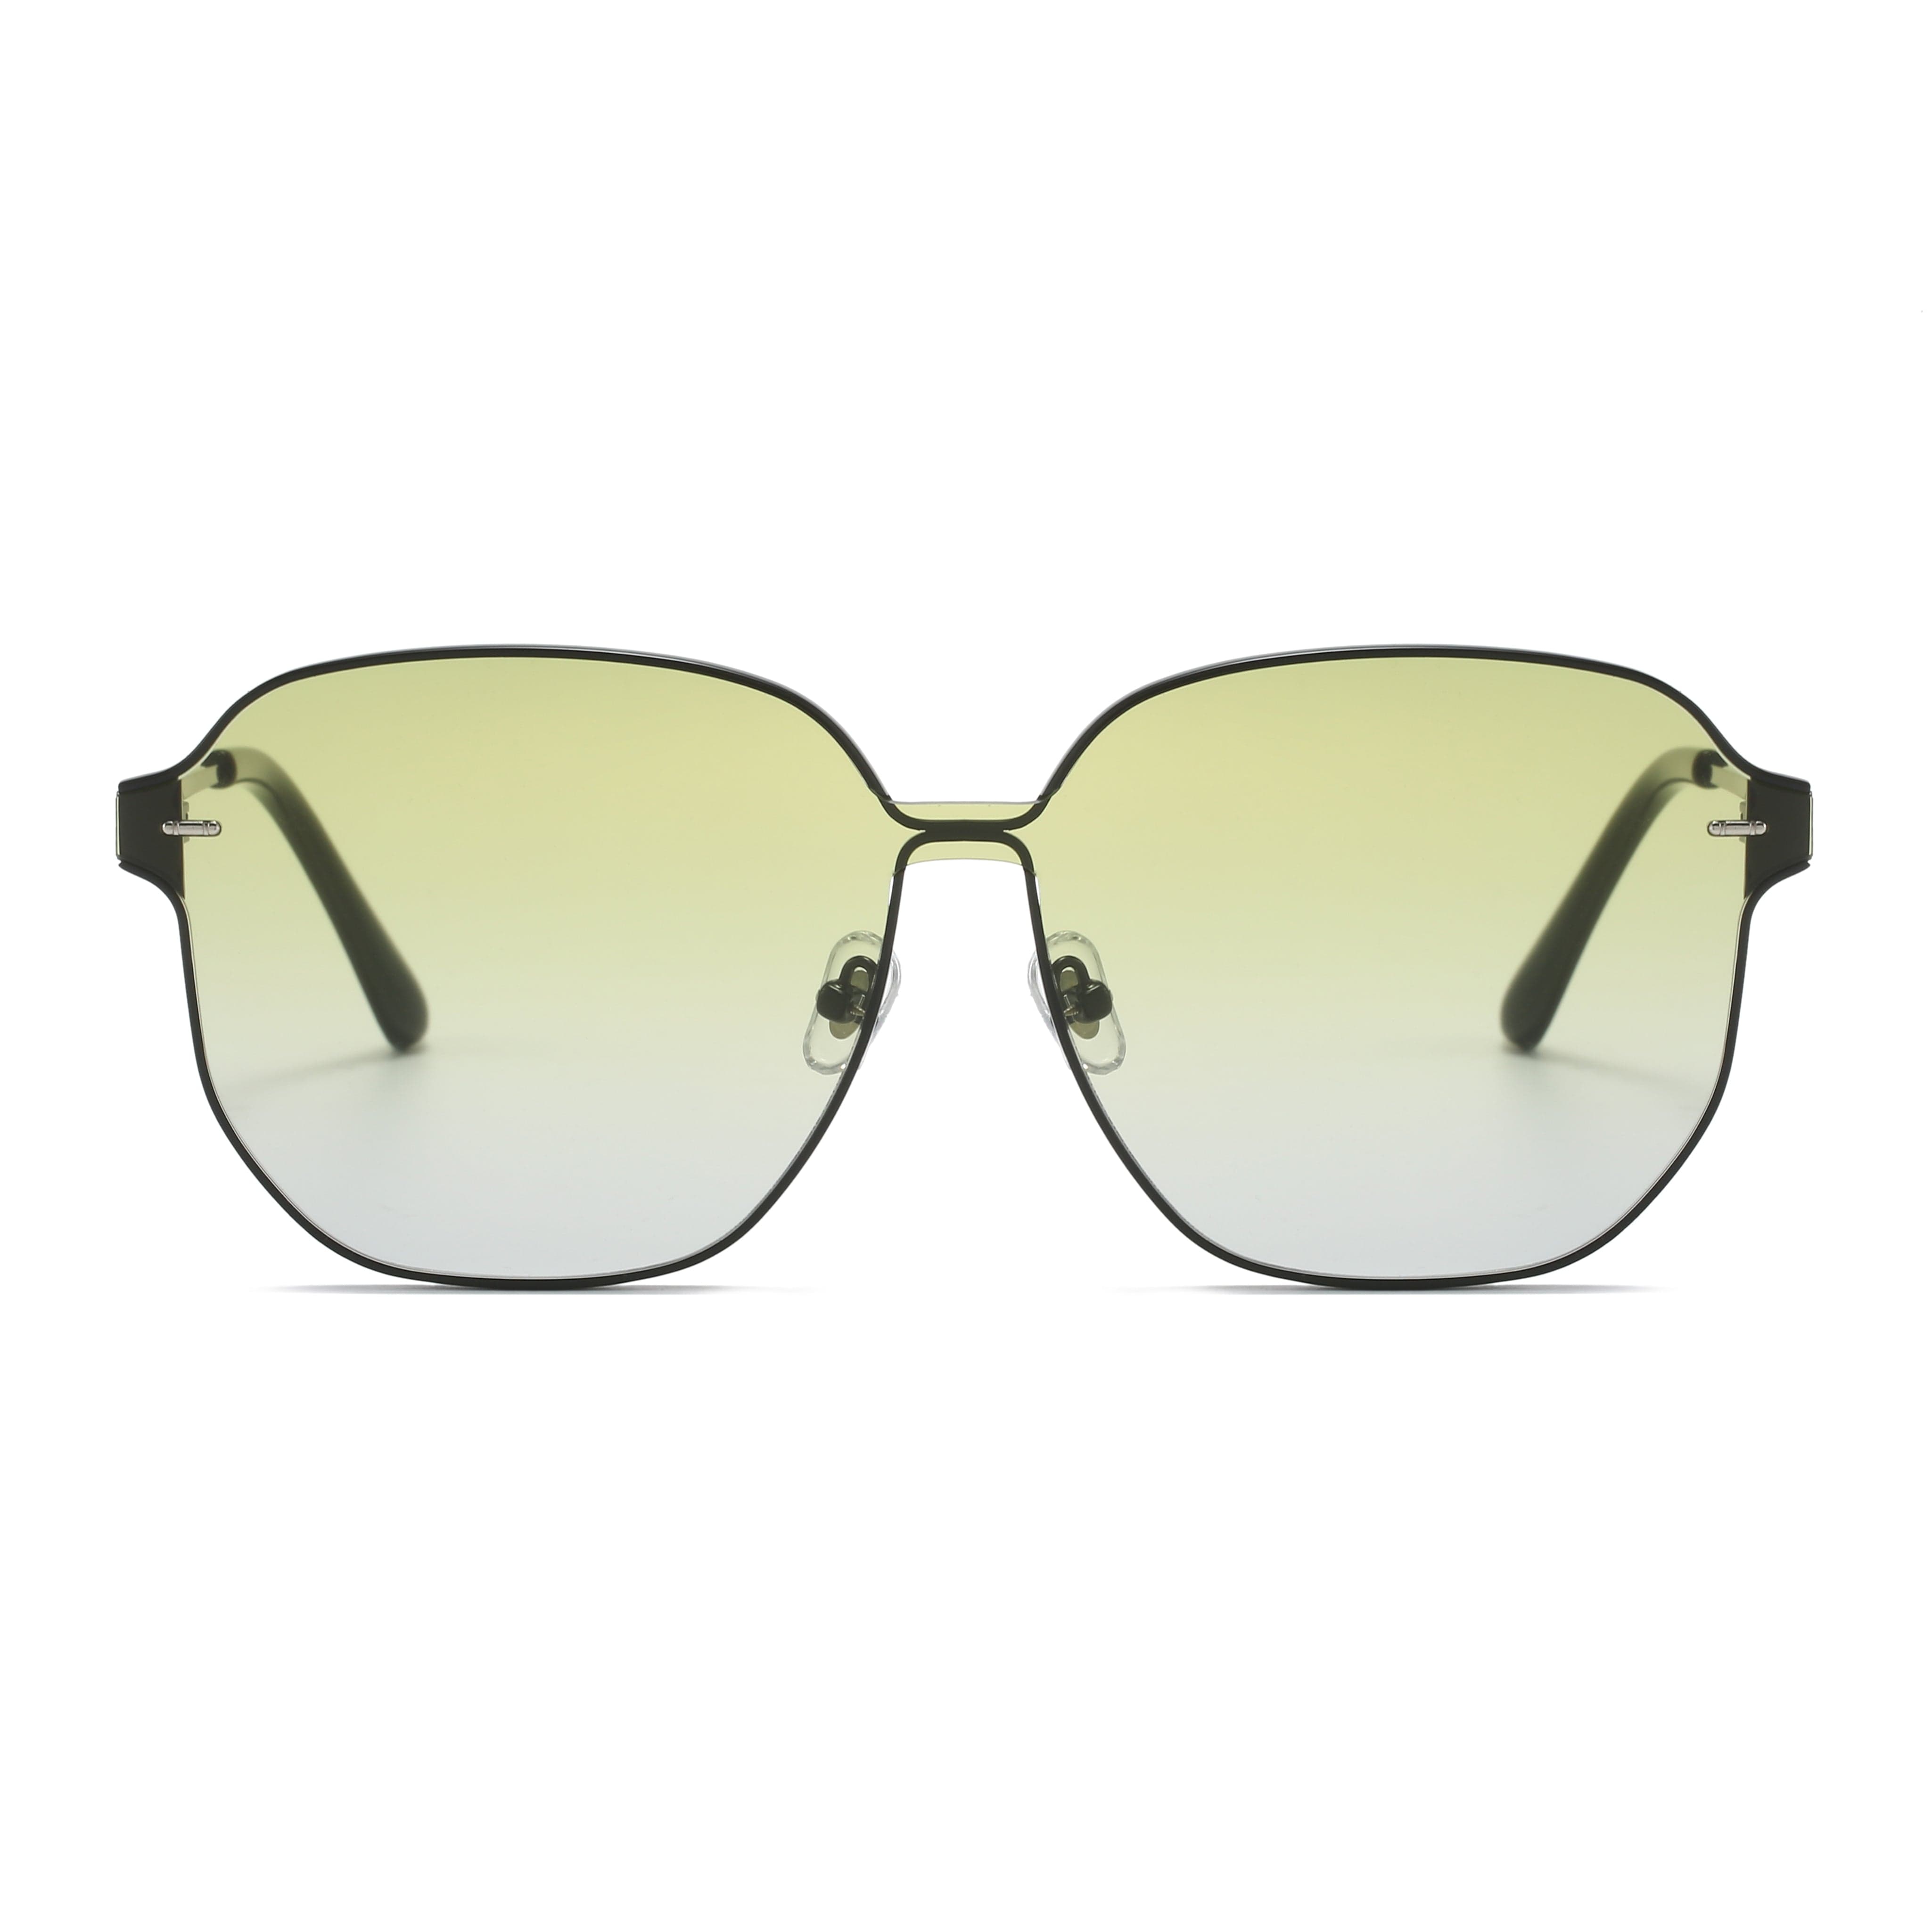 GIUSTIZIERI VECCHI Sunglasses Large / Light Green PristinePearl Uno